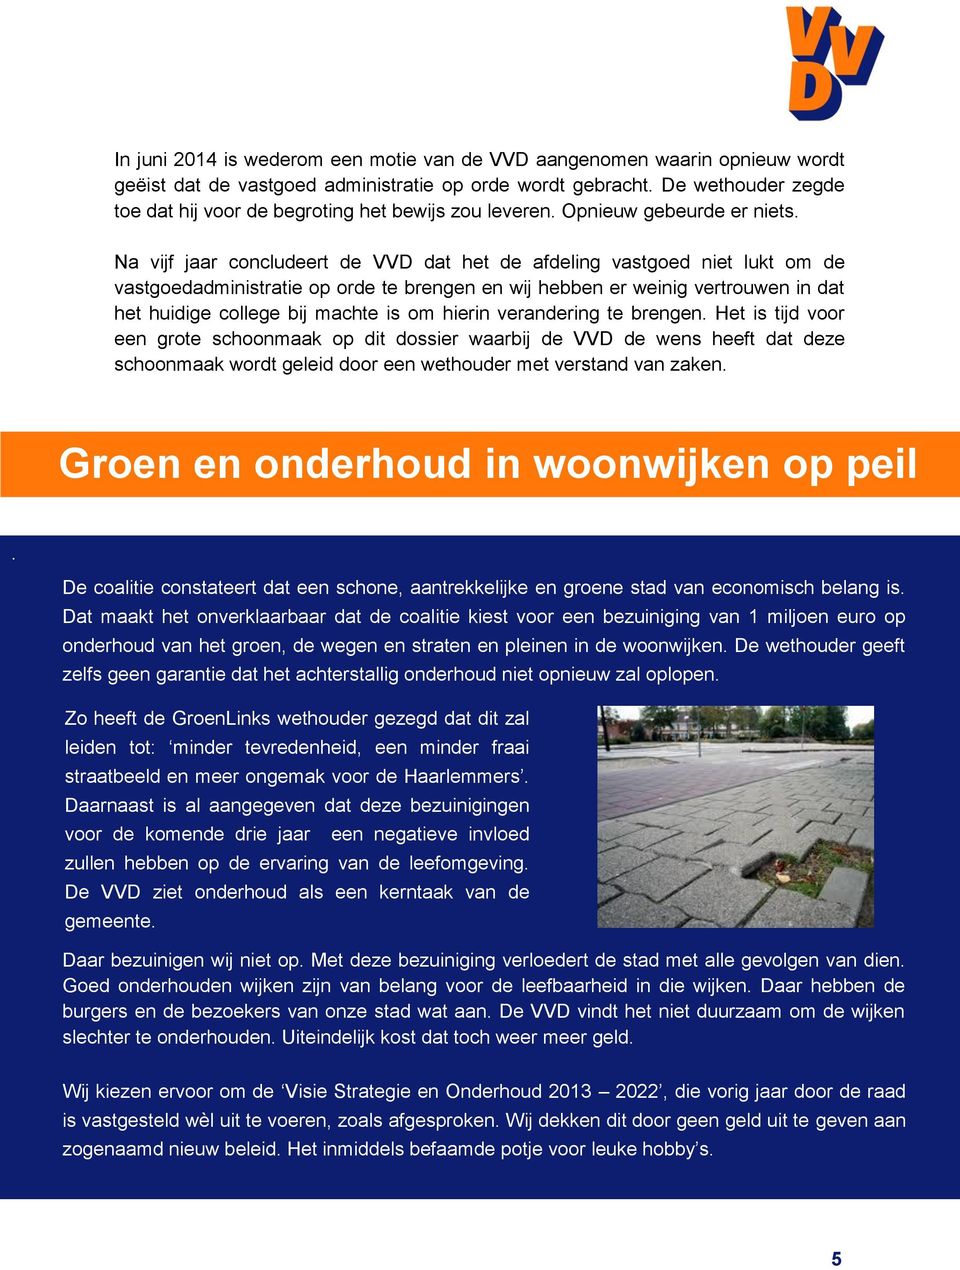 Na vijf jaar concludeert de VVD dat het de afdeling vastgoed niet lukt om de vastgoedadministratie op orde te brengen en wij hebben er weinig vertrouwen in dat het huidige college bij machte is om